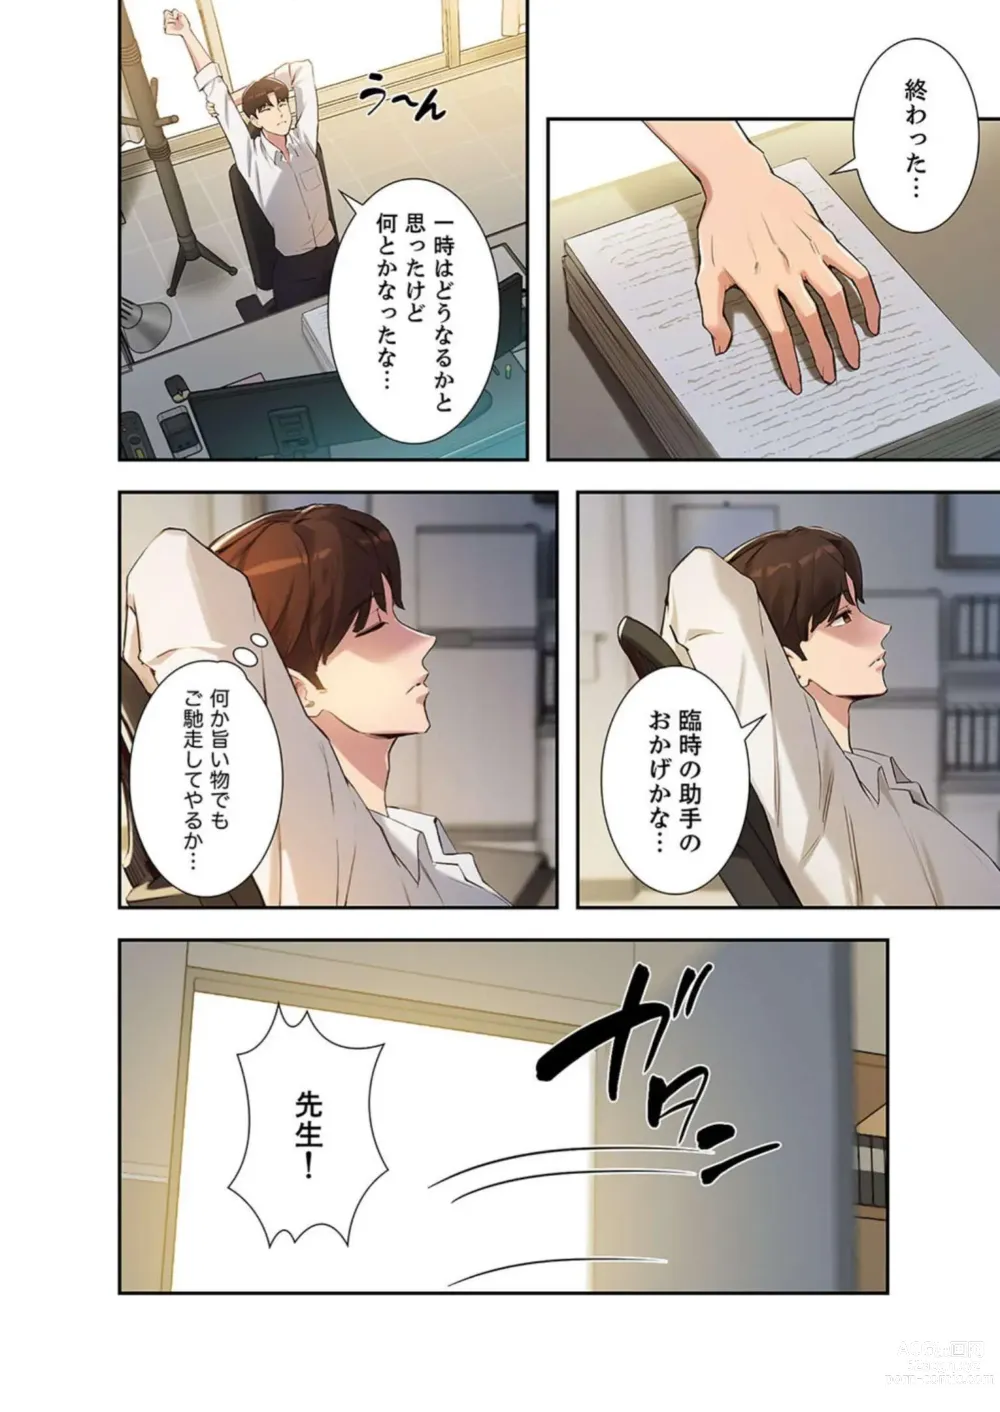 Page 4 of manga Hatachi 03